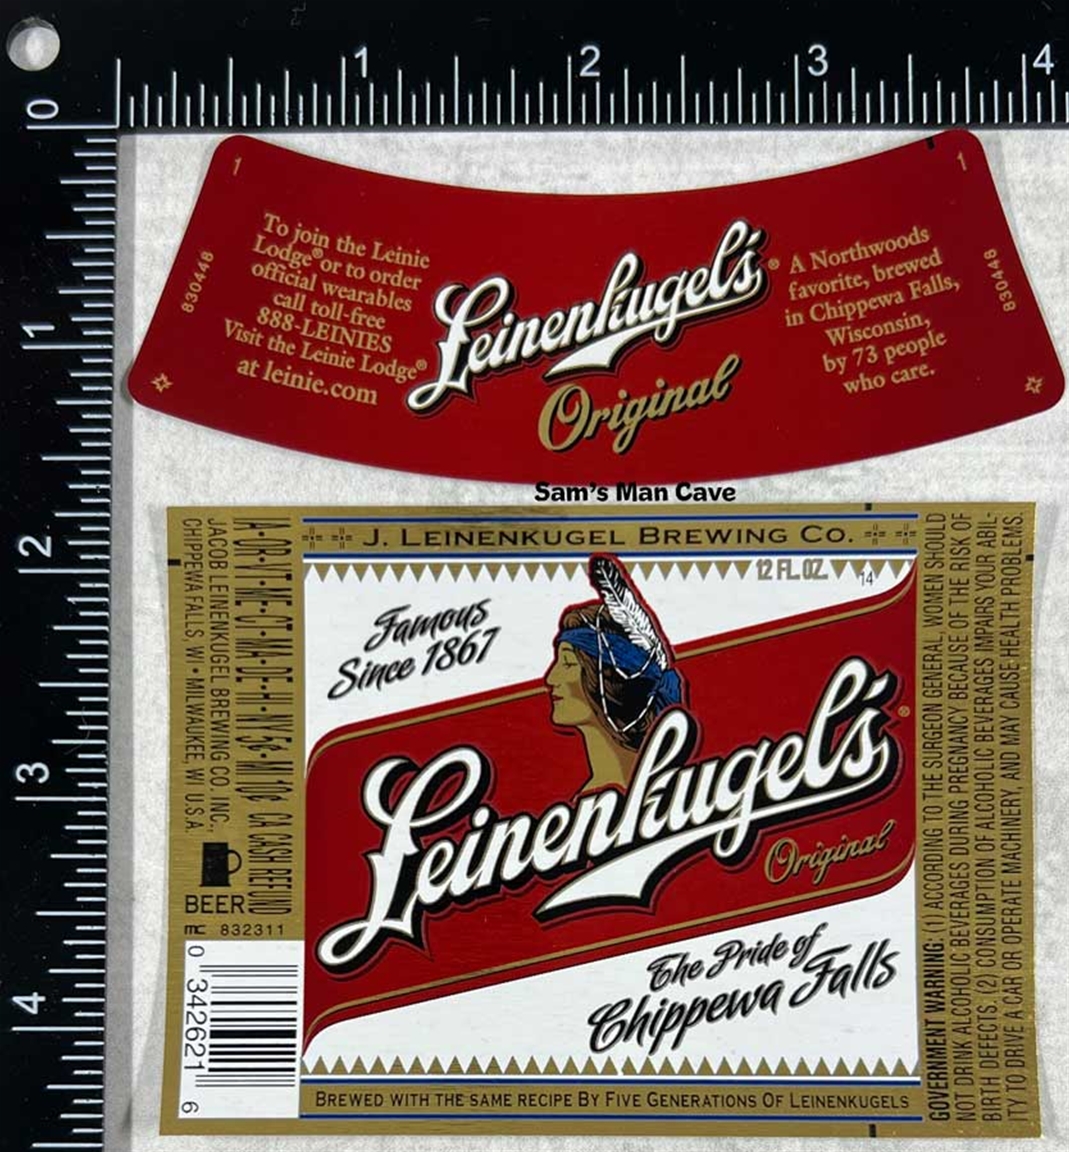 Leinenkugel's Beer Label with neck